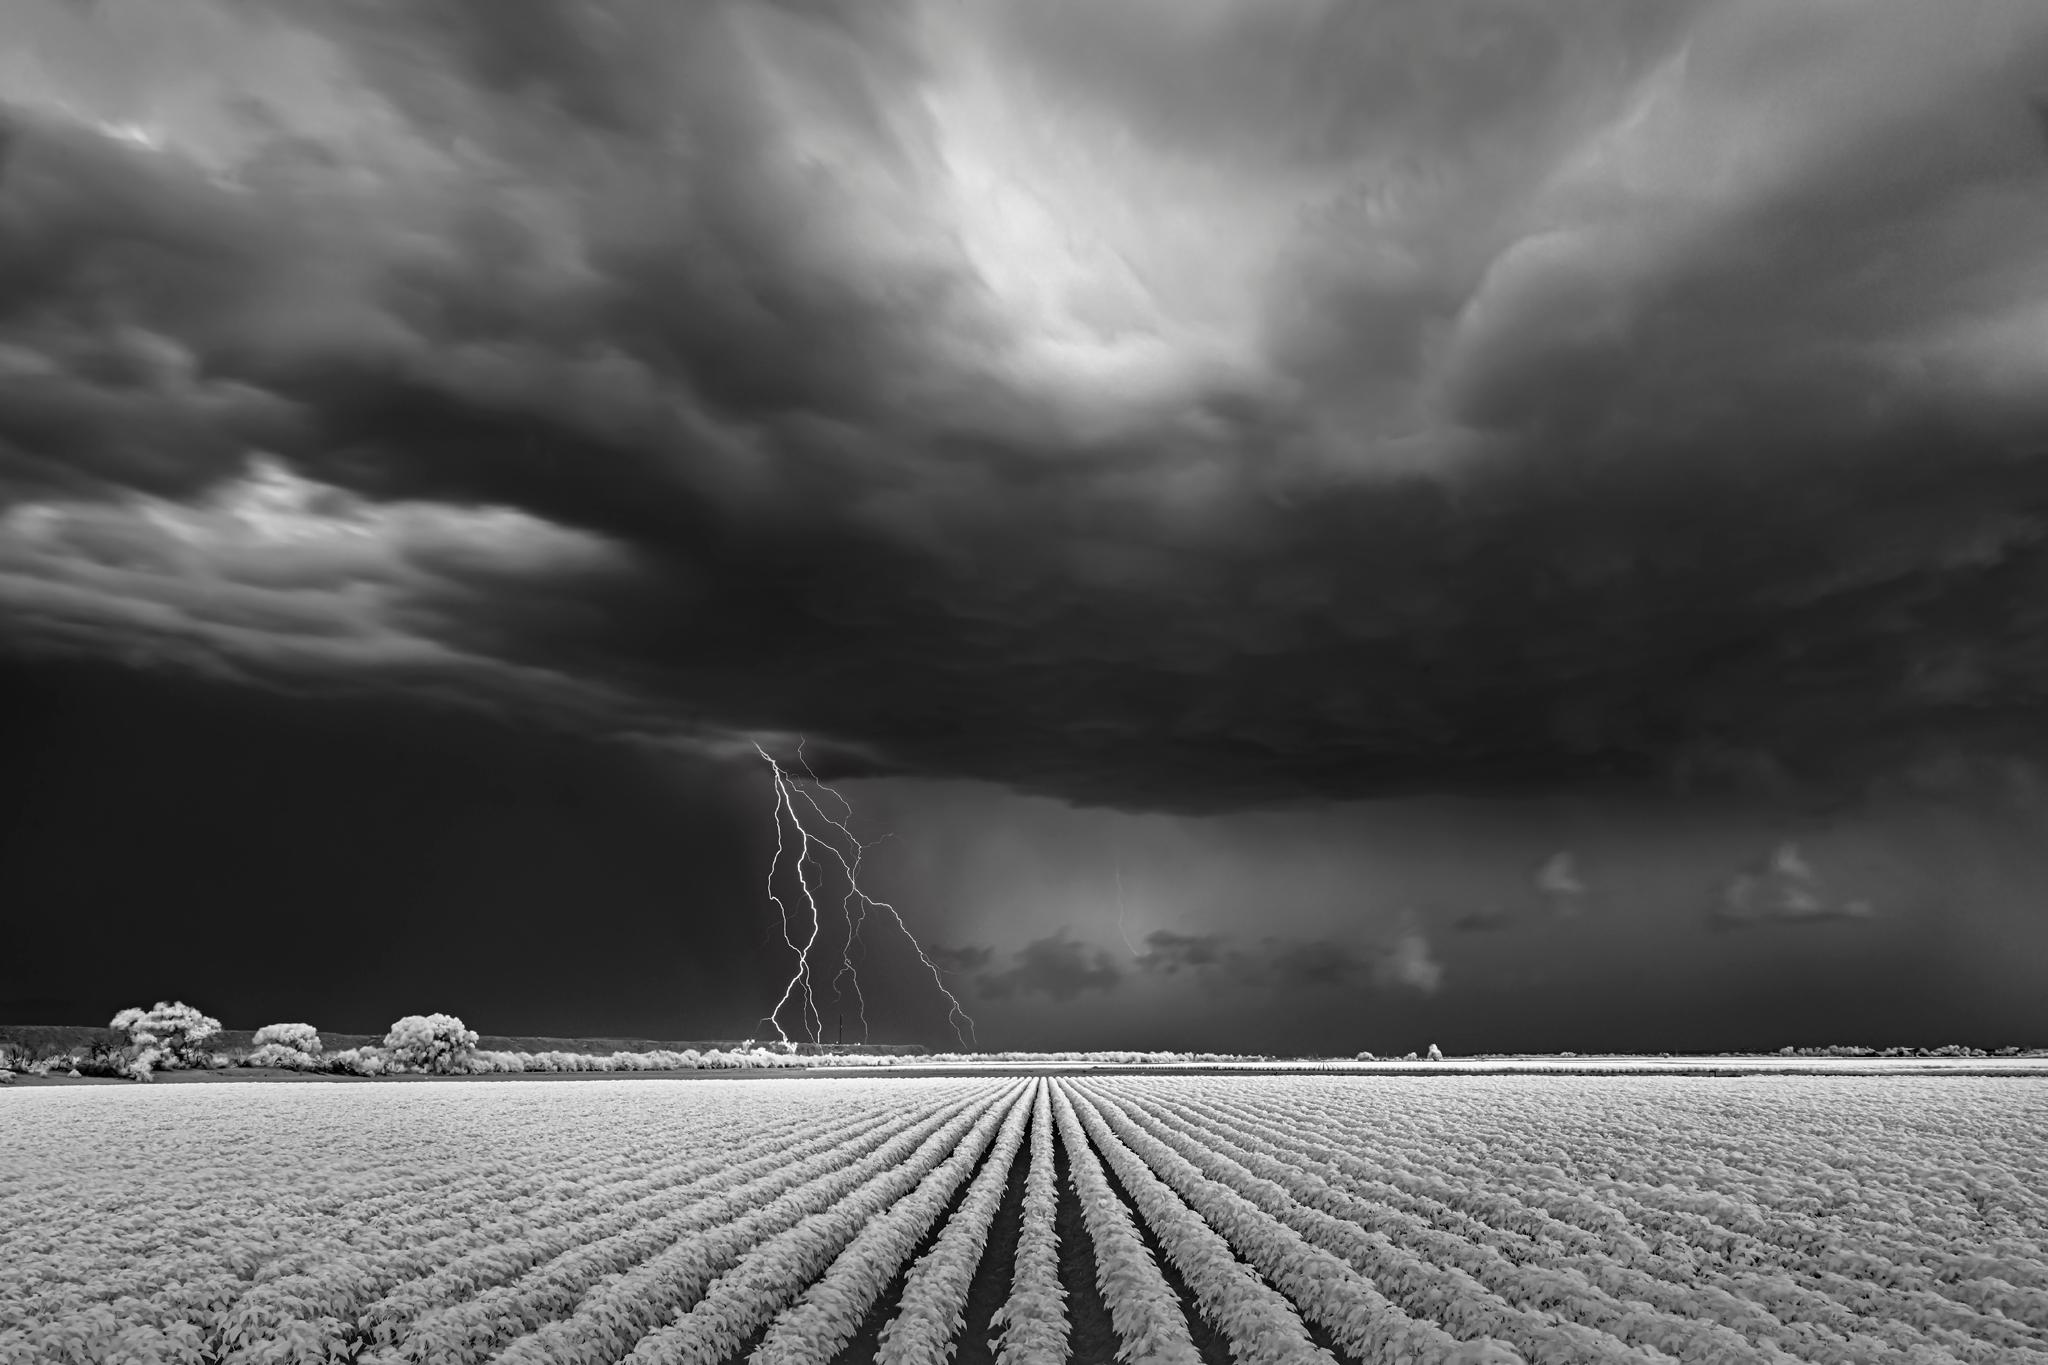 Black and White Photograph Mitch Dobrowner - Lightning/Cotton Field, photographie en édition limitée, archivée, signée 